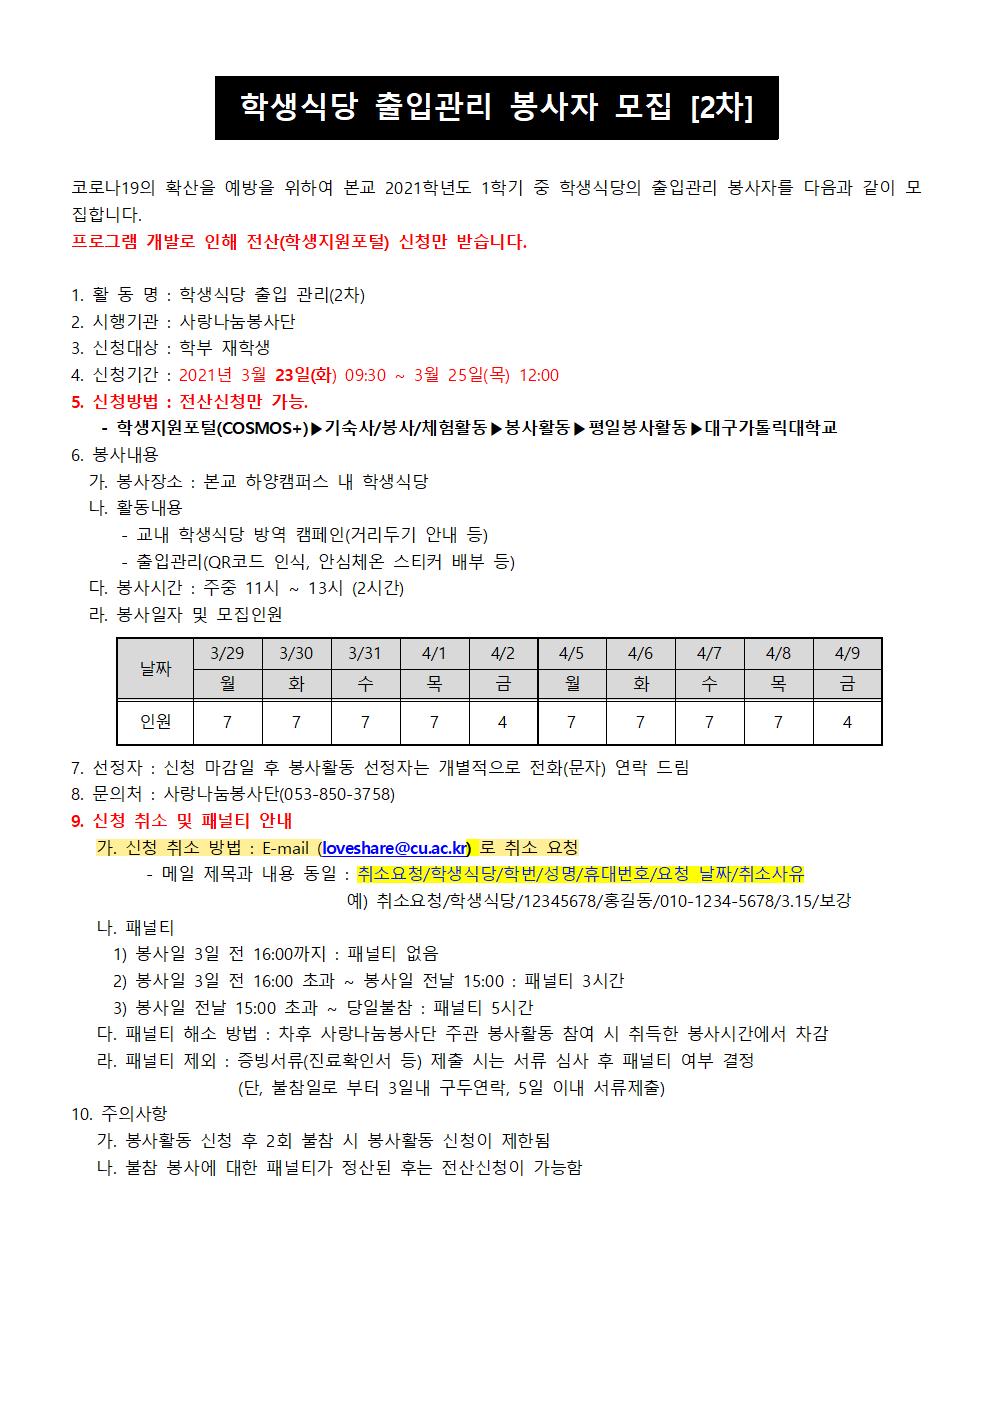 [사랑나눔봉사단 주관 봉사] [모집마감] 2021-1 학생식당 출입관리 봉사자 모집(2차) 안내